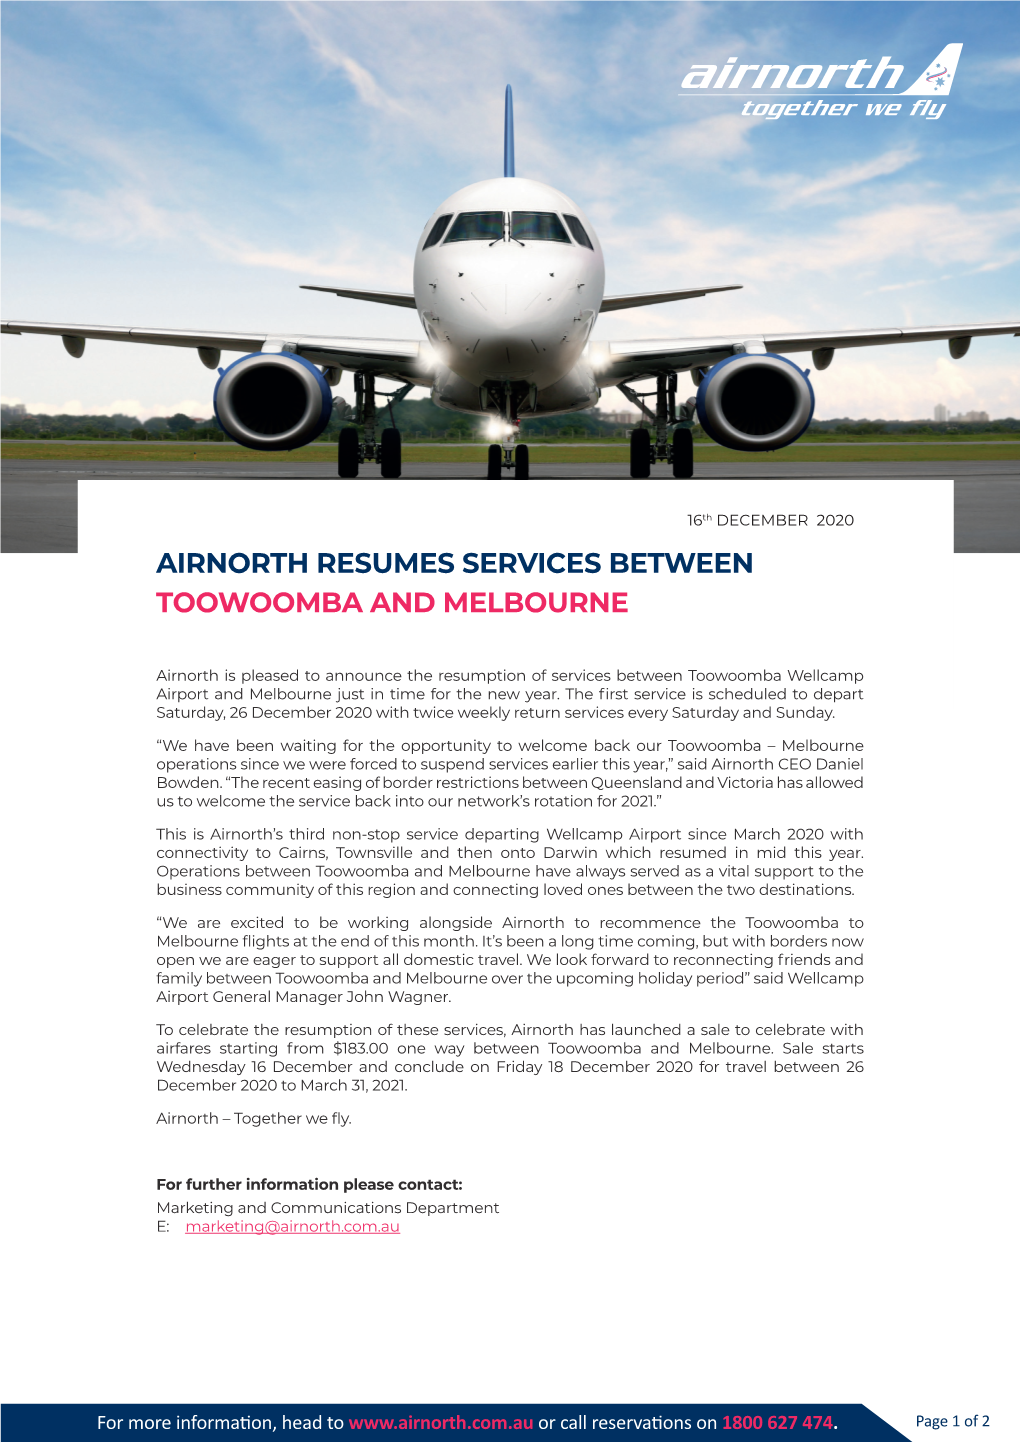 Airnorth – Resume MEL Flights